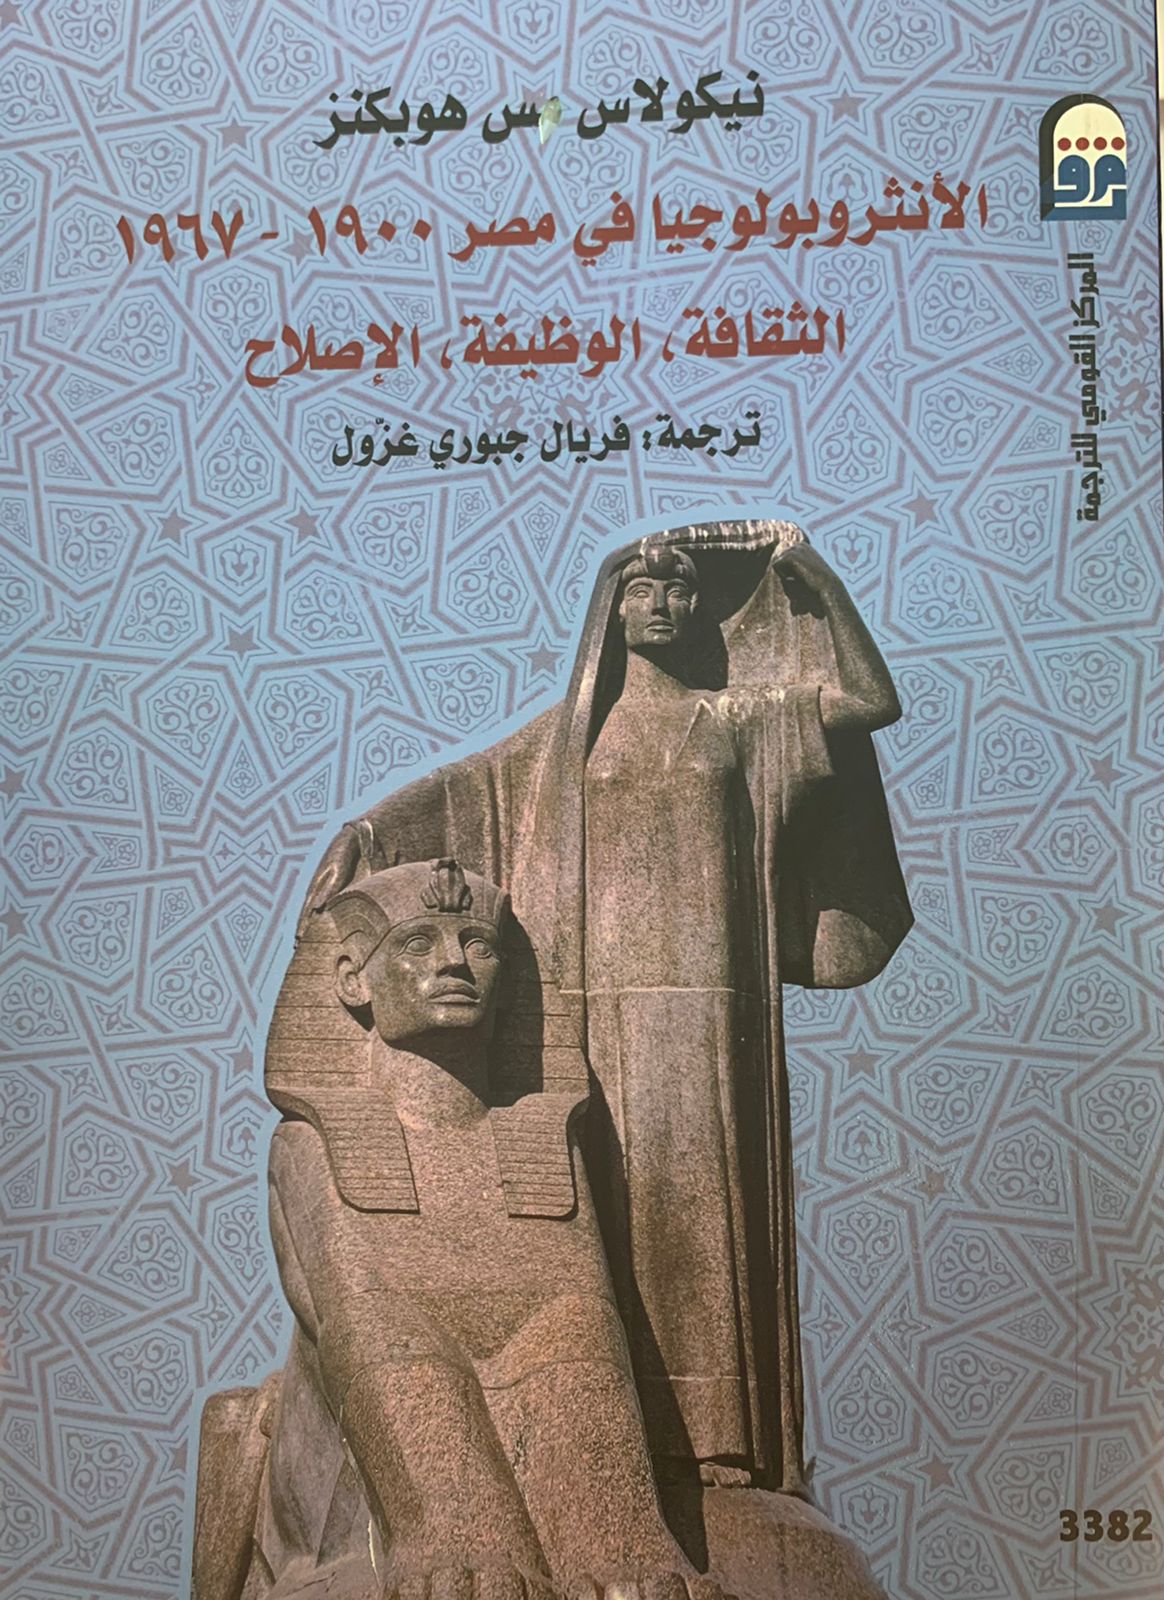 الانثروبولوجيا في مصر 1900-1967 الثقافة، الوظيفة،الإصلاح " كتاب جديد للمركز القومي للترجمة